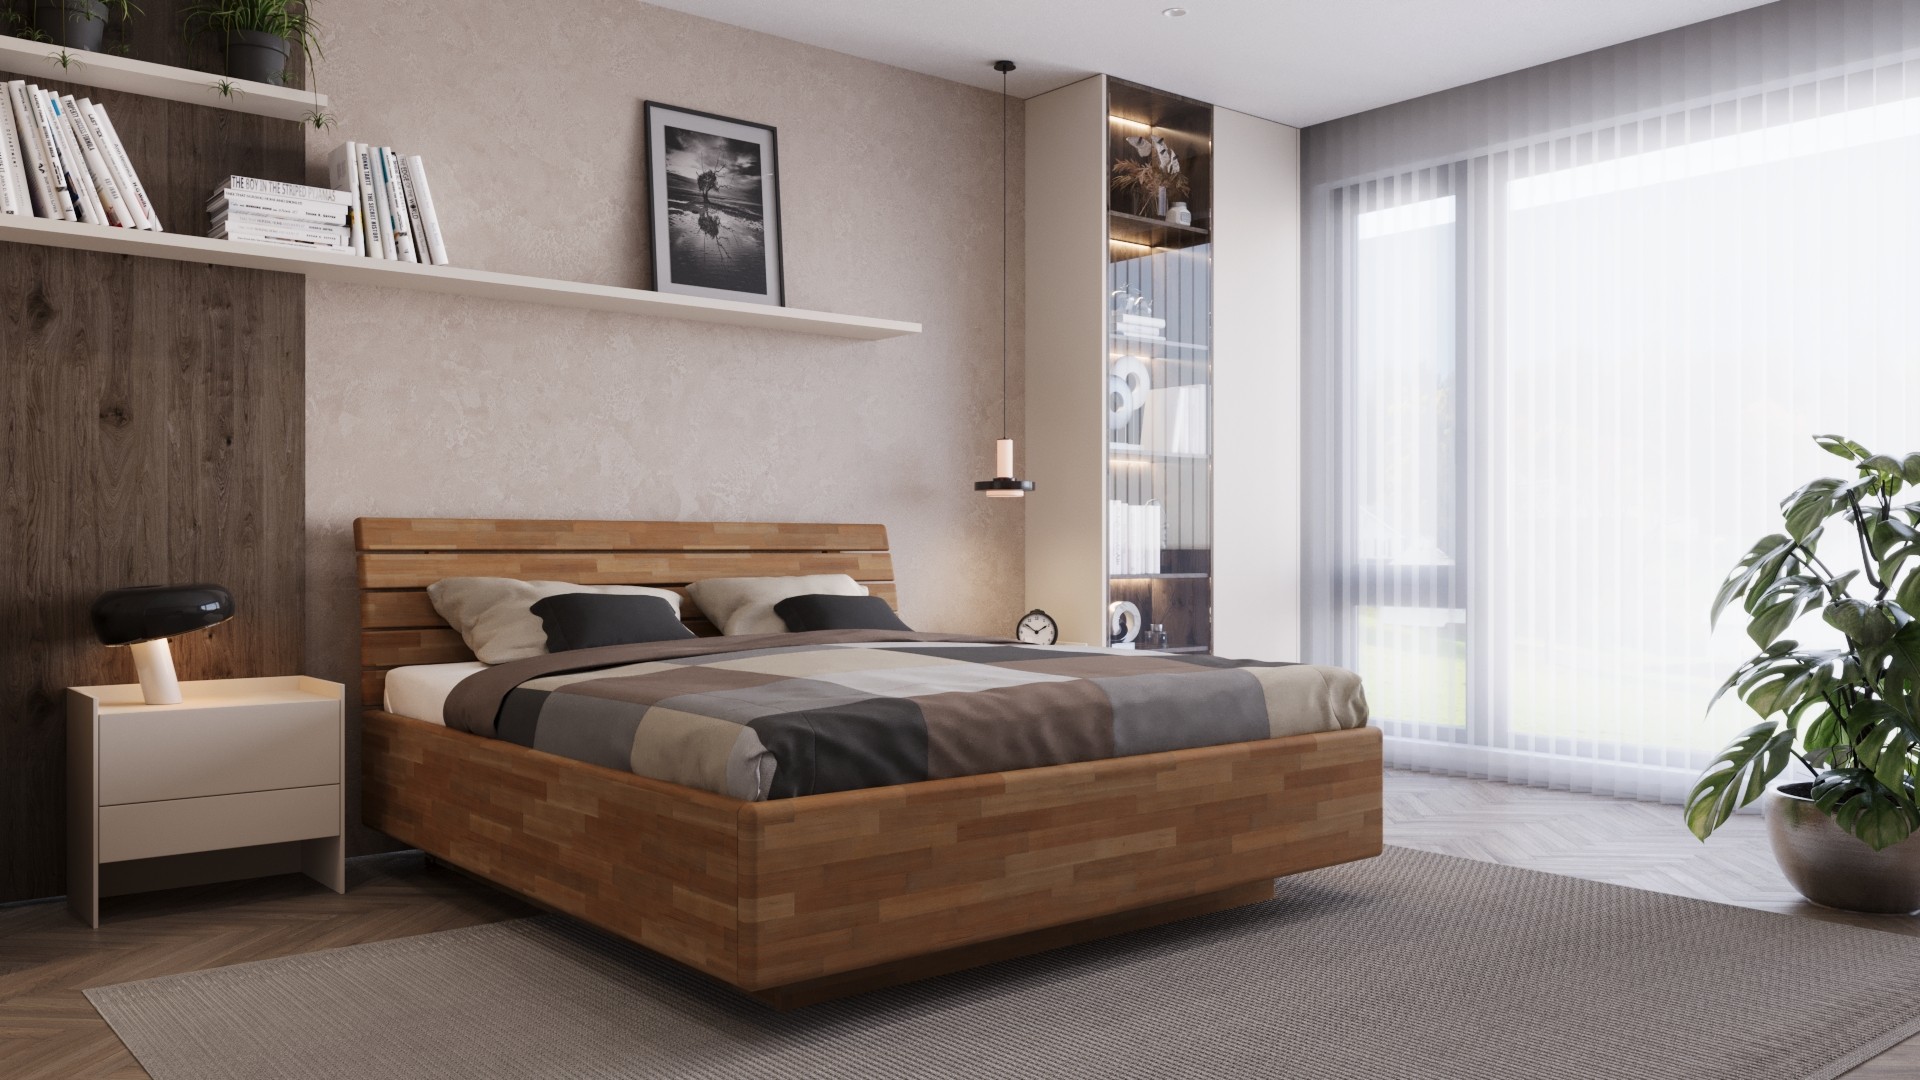 Luksusowe łóżko z dopracowanym designem, sprawiające wrażenie jakby unosiło się w powietrzu Levanto